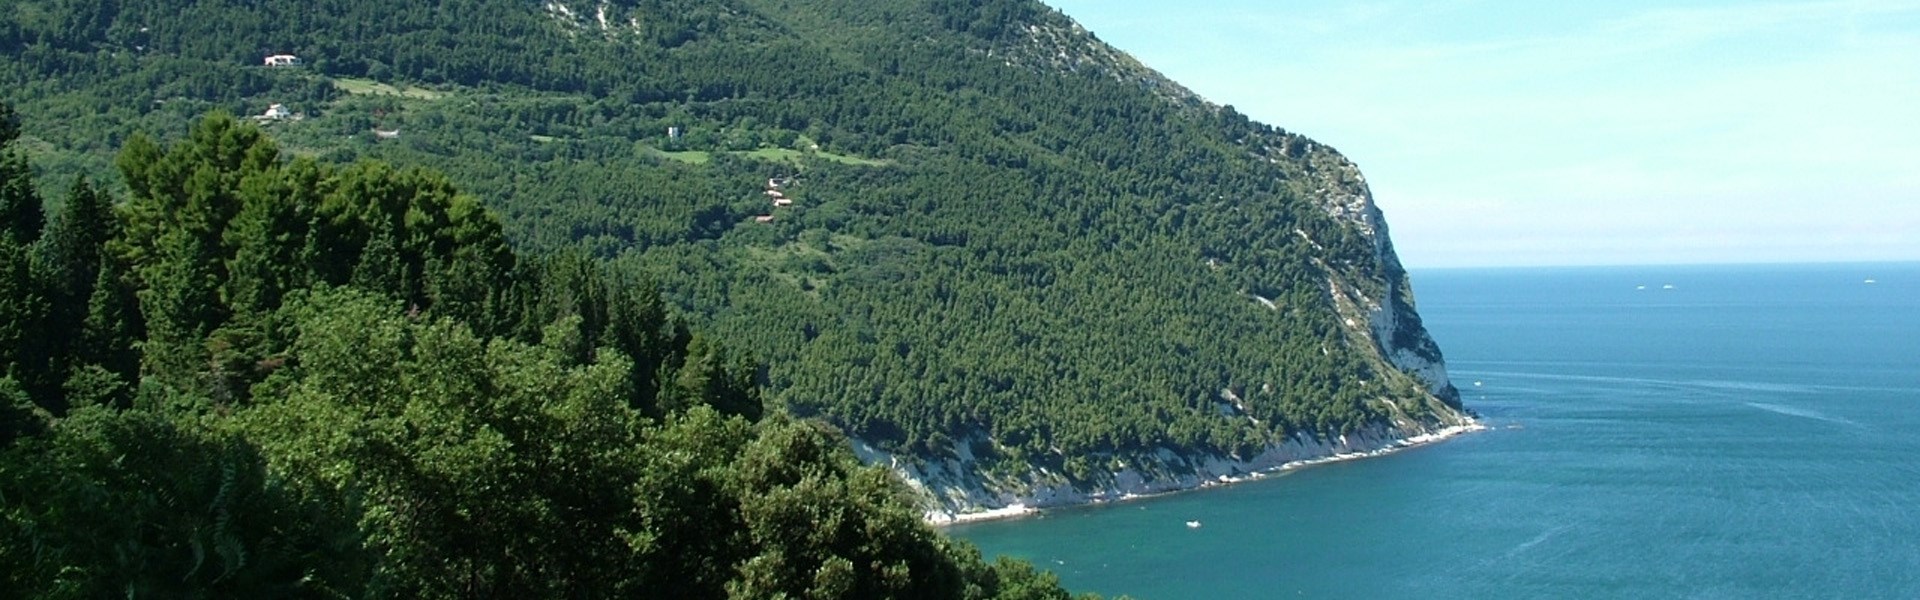 Riserva naturale Monte Conero